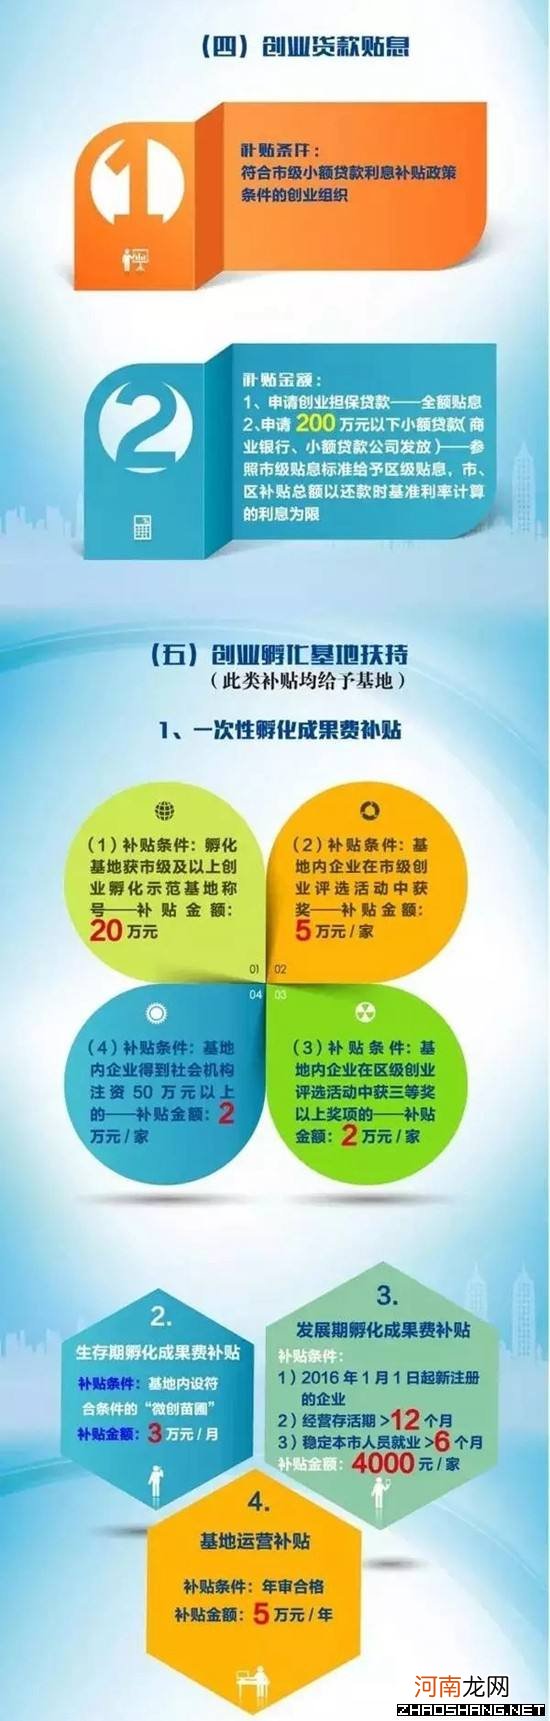 杭州创业优惠扶持政策 杭州创业优惠扶持政策是什么